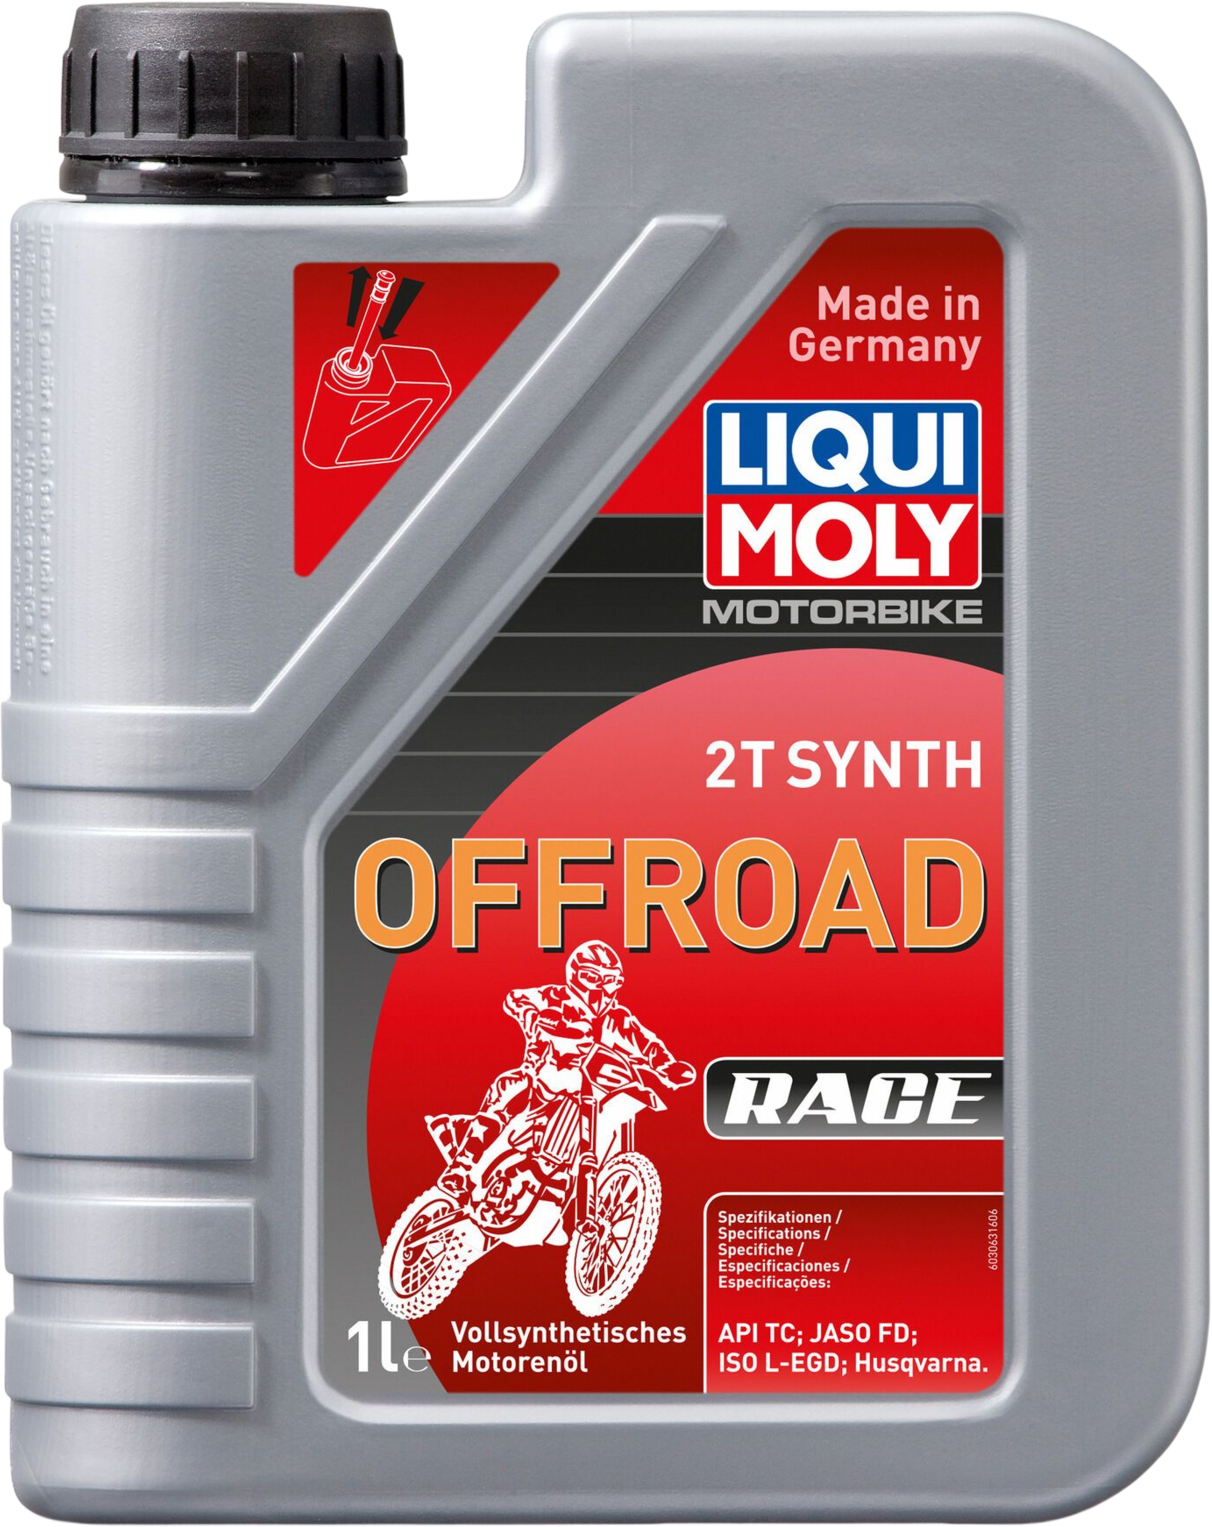 LM3063-1 Volledig synthetische high performance motorolie. Zorgt voor maximale prestaties, smering, slijtagebescherming en motorreinheid onder alle bedrijfsomstandigheden.